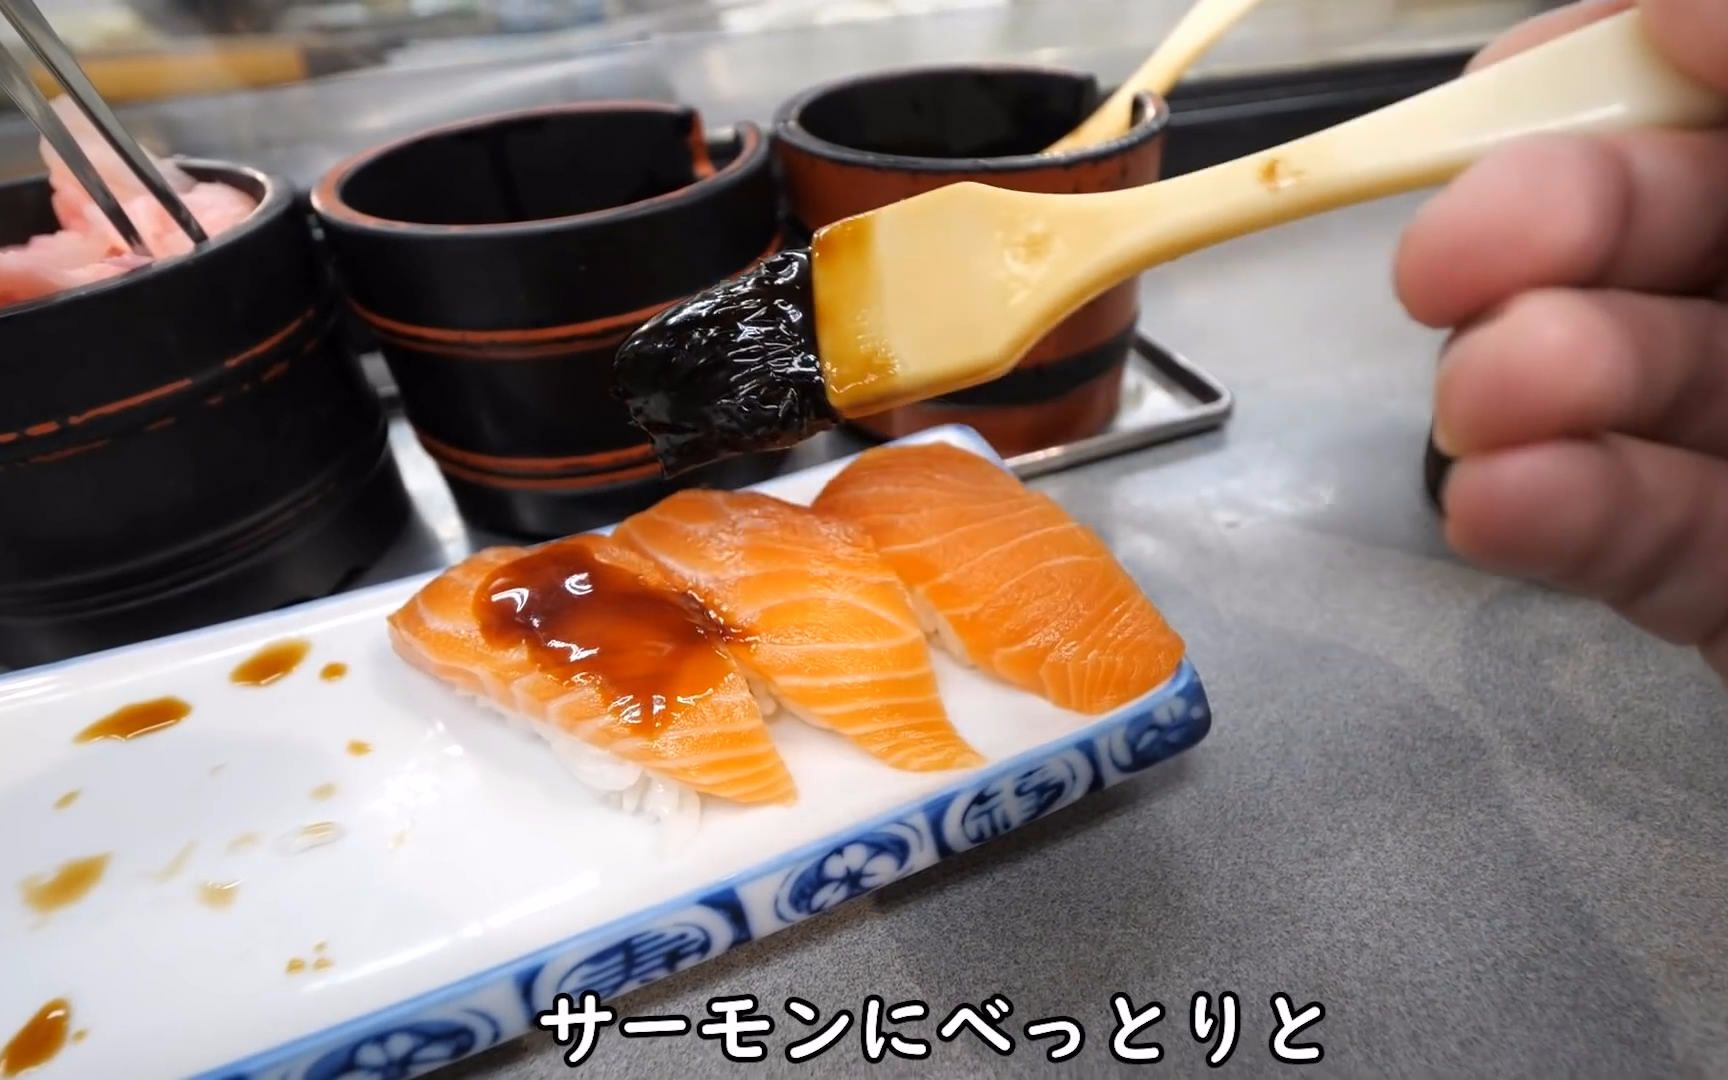 【啤酒怪】大阪新世界的便宜寿司真是超值~今天只能喝无酒精的麦芽汽水了~